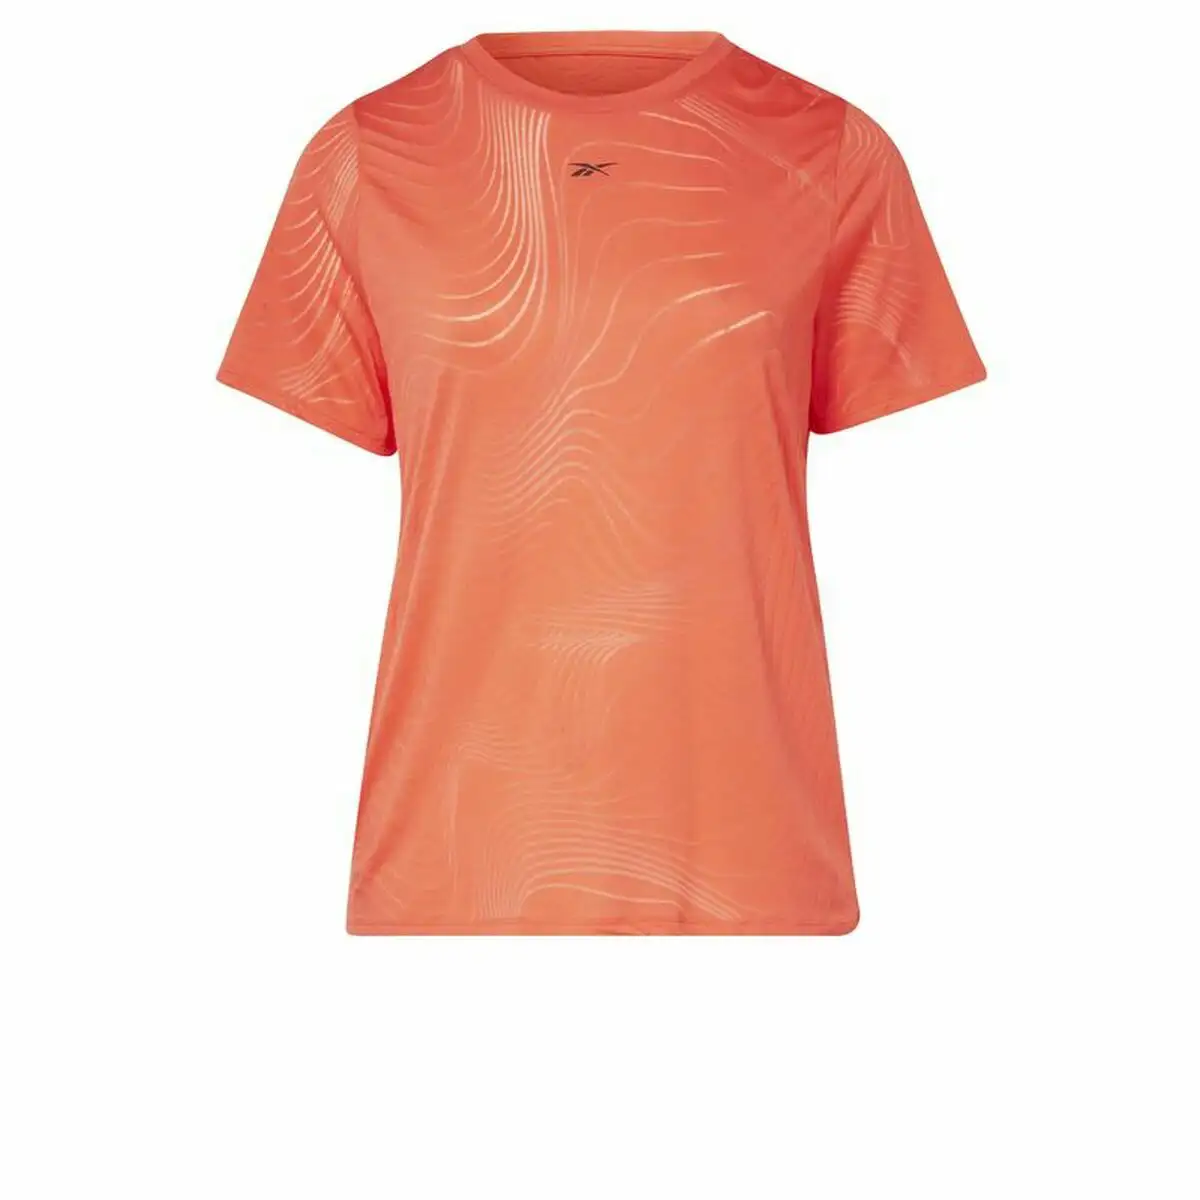 T shirt a manches courtes femme reebok burnout orange_9900. DIAYTAR SENEGAL - Là où Choisir est une Affirmation de Style. Naviguez à travers notre boutique en ligne et choisissez des produits qui vous distinguent et vous valorisent.